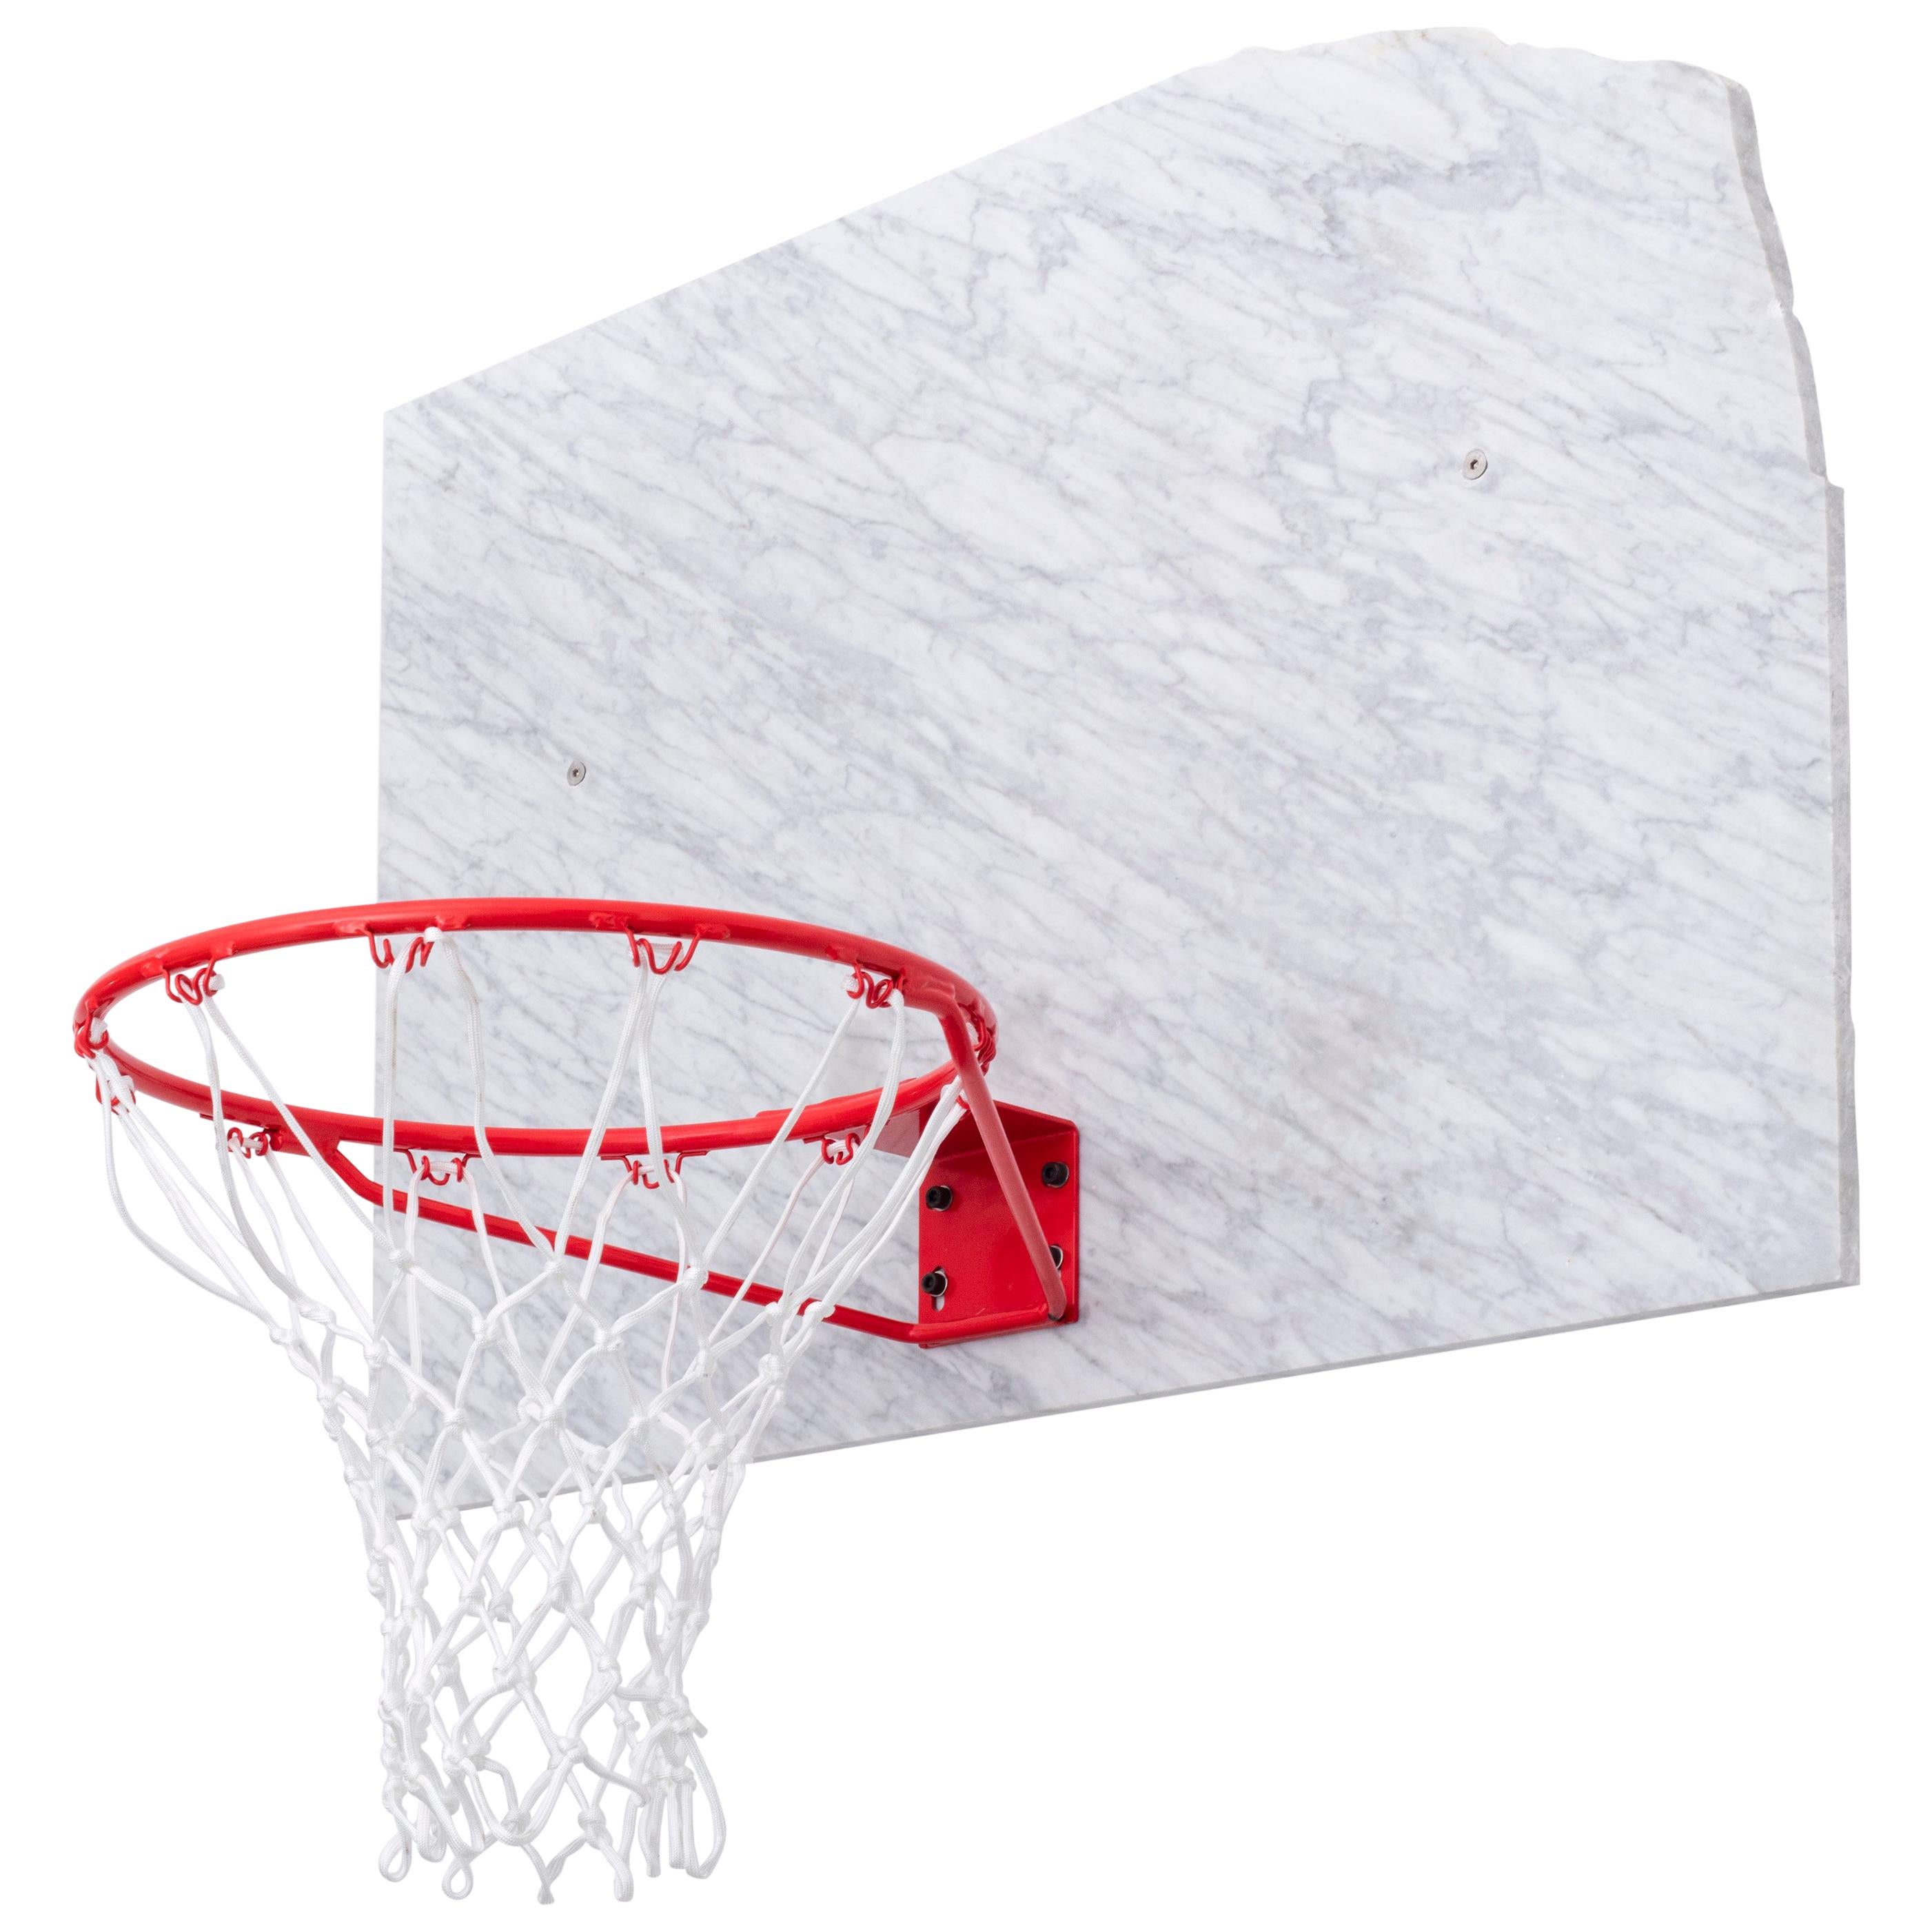 Basketballtopf und Rückwand aus italienischem Marmor, Guillermo Santoma